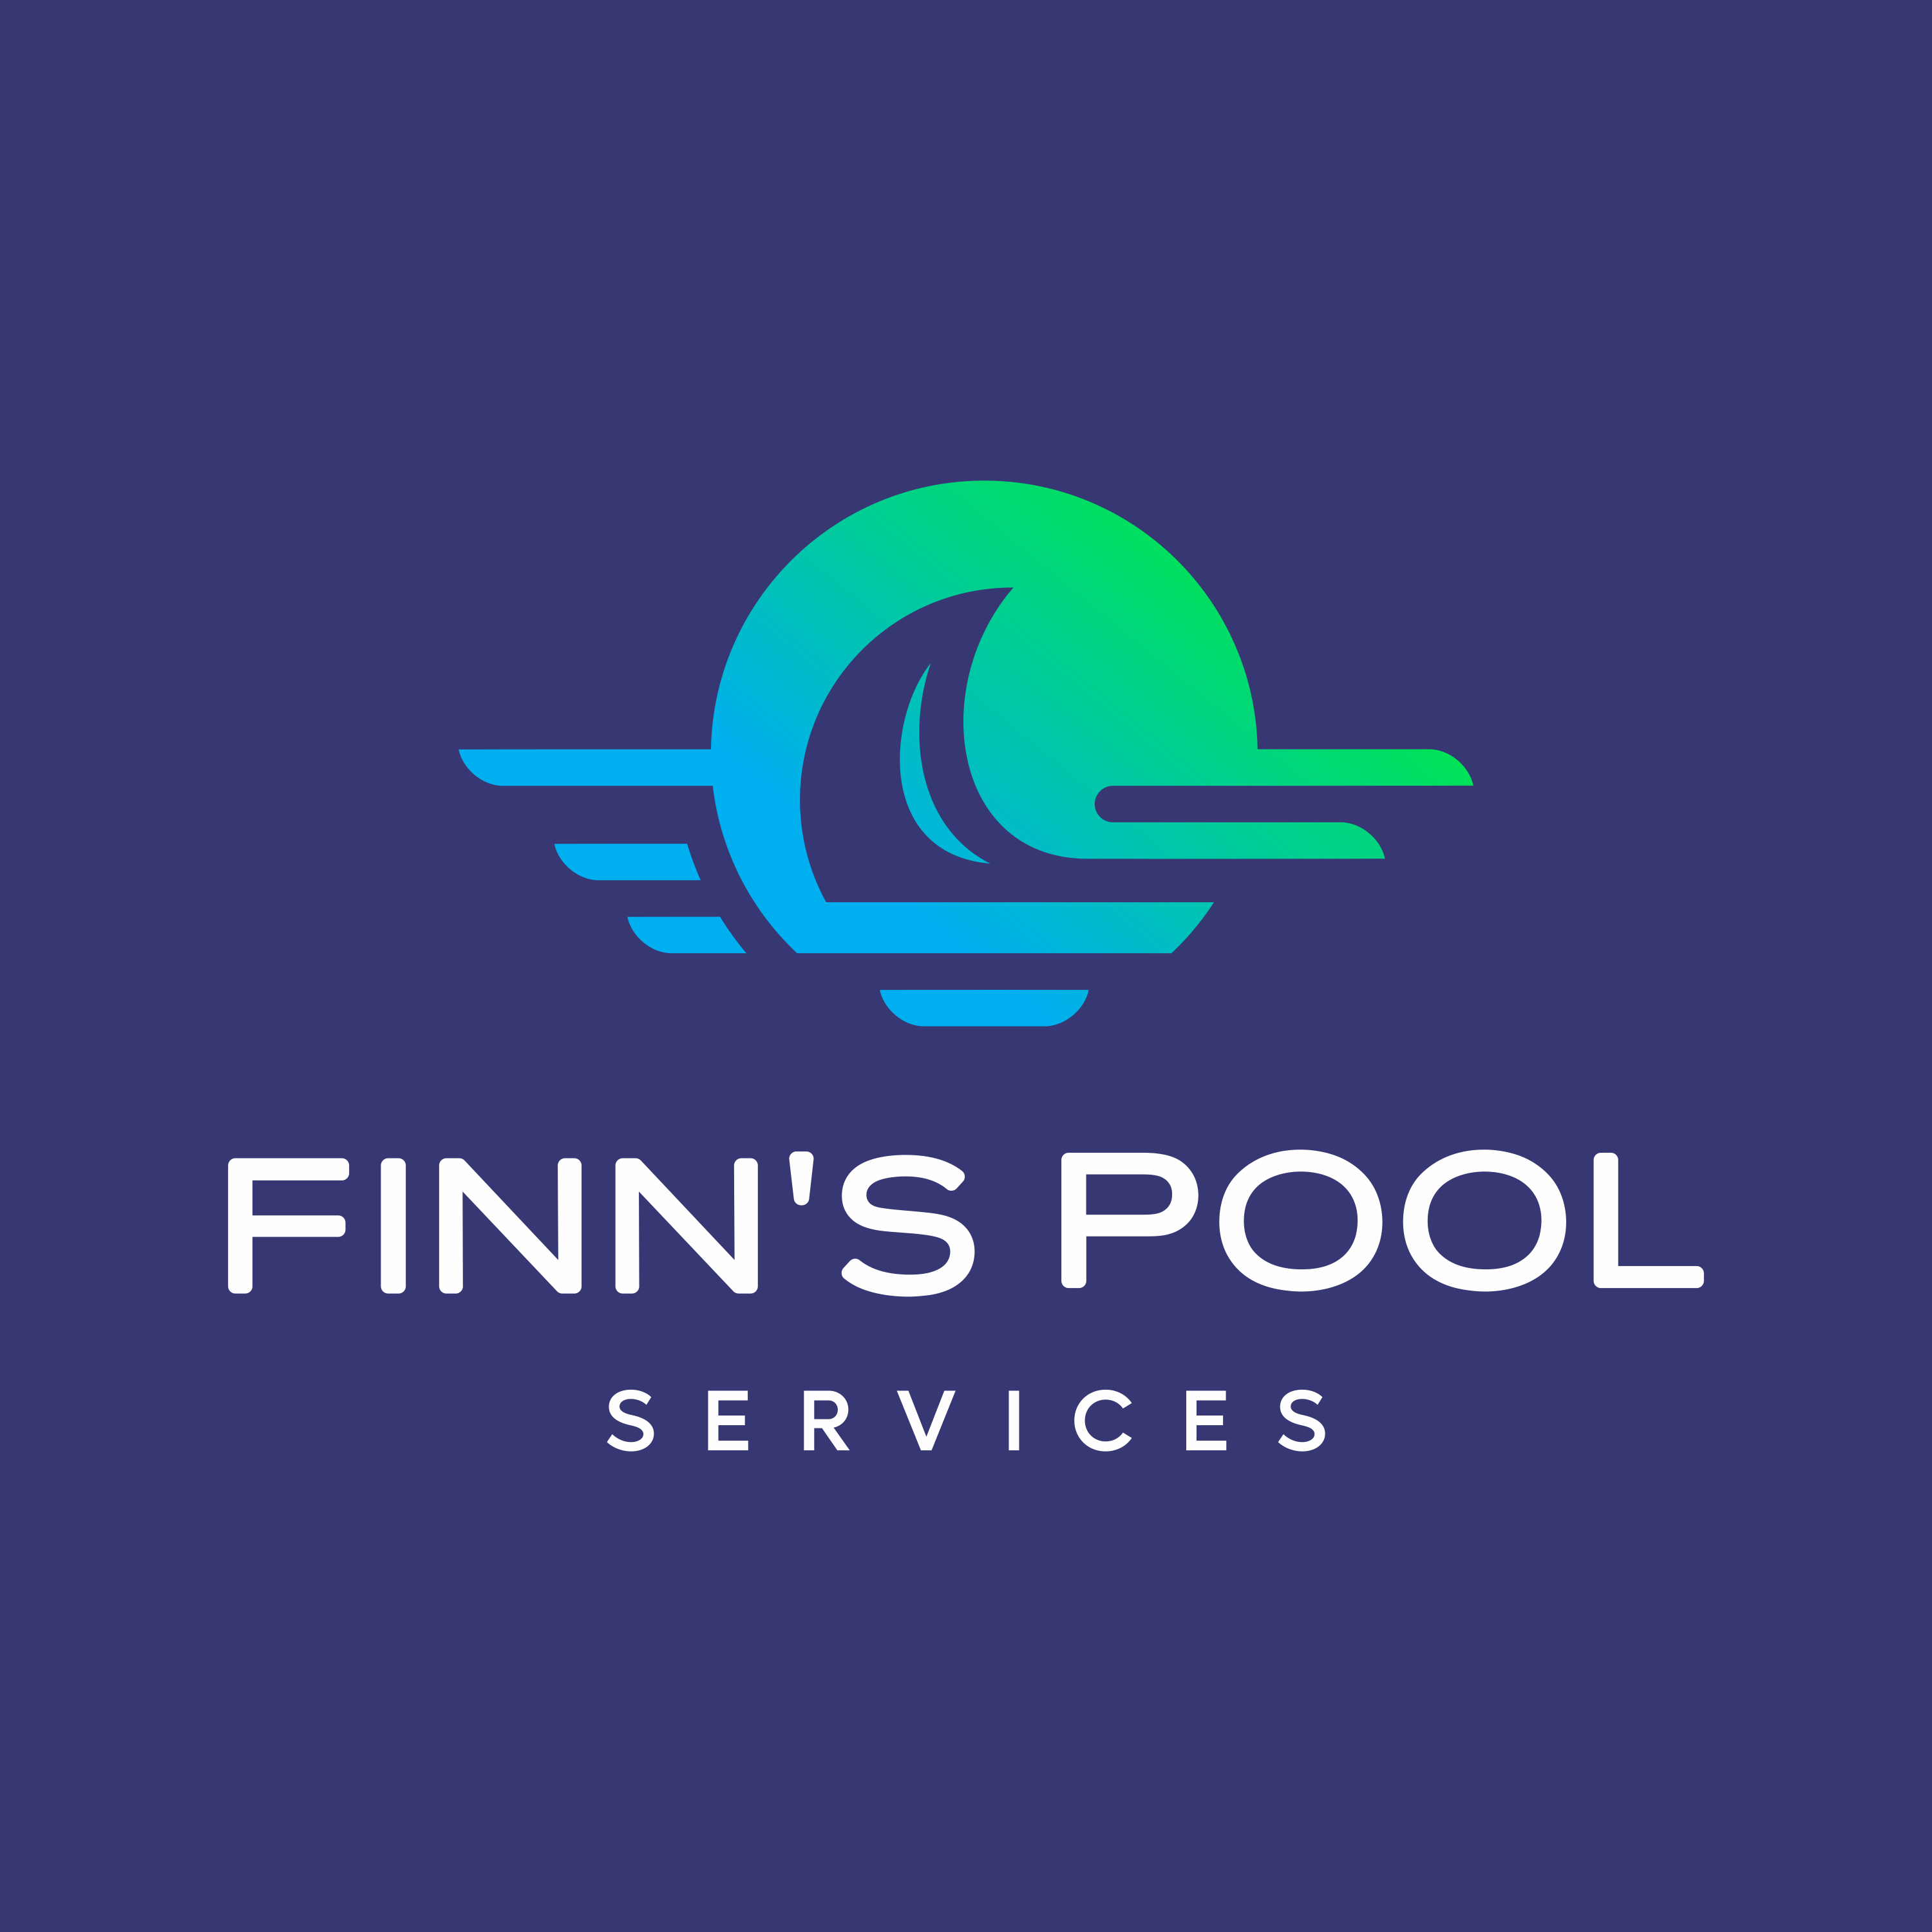 Finn's Pool Services